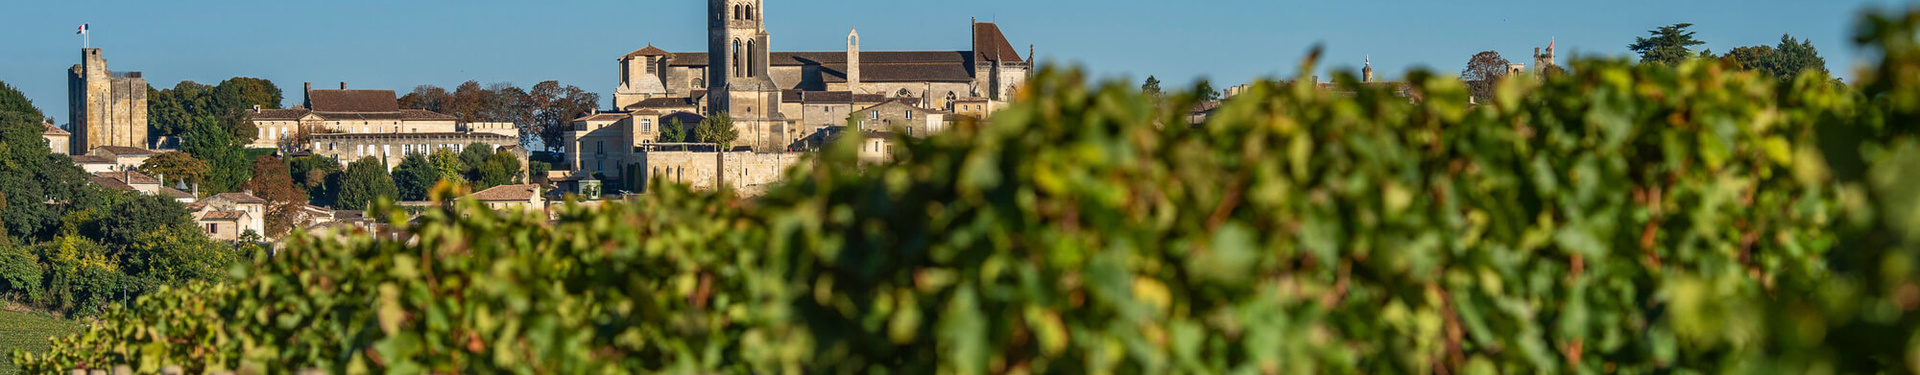 Formulaire de réservation - La route des grands vins de Bordeaux à vélo | Nature Occitane